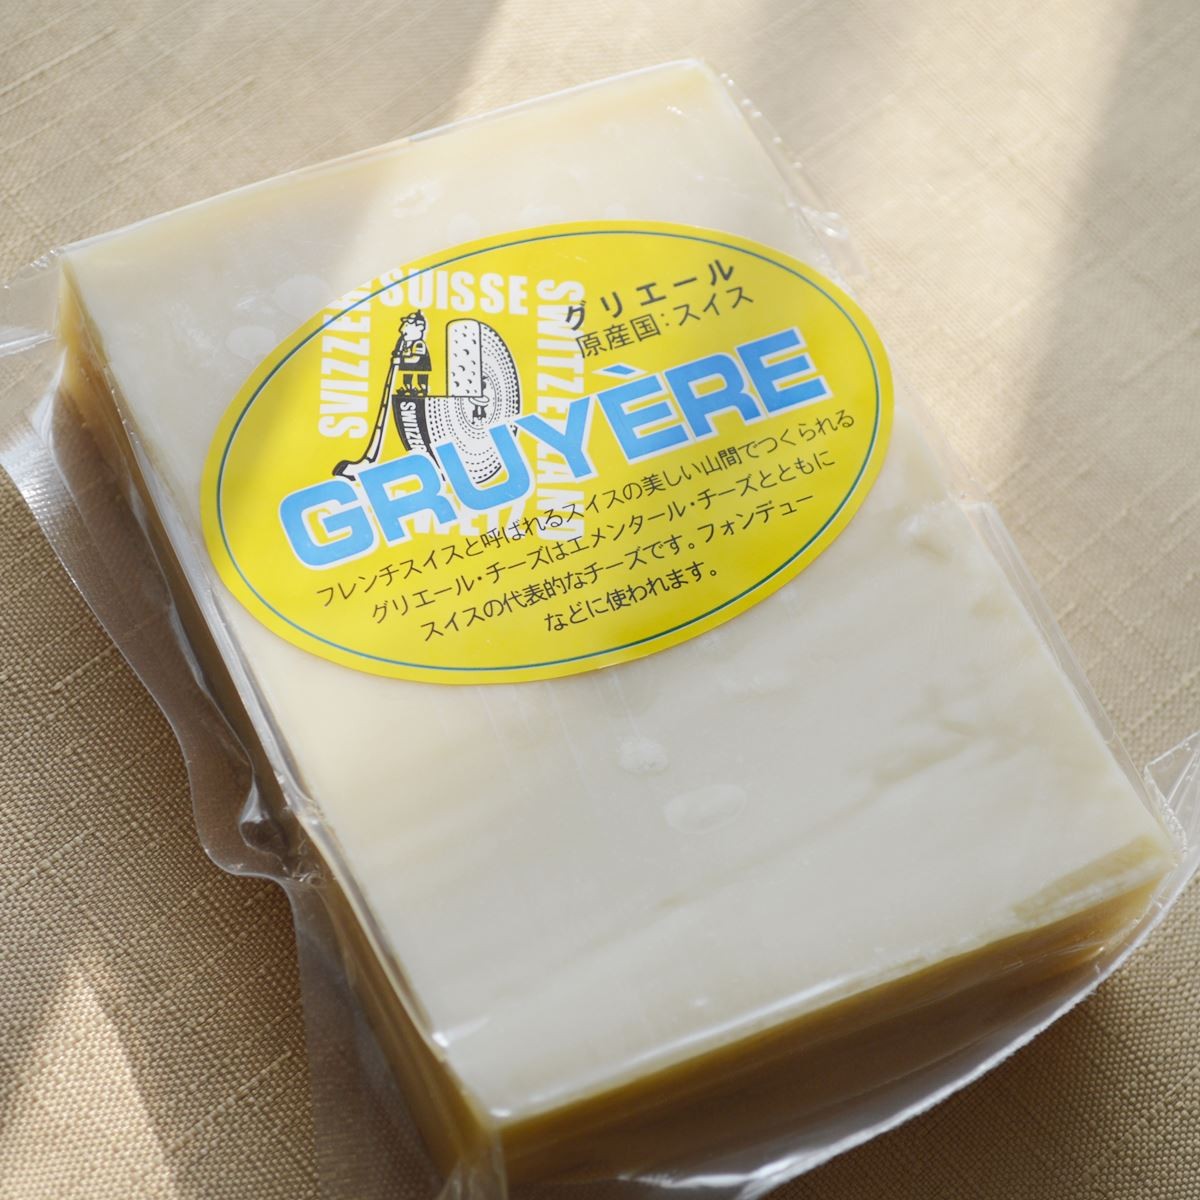 グリエルチーズ 約570g前後 スイス産 フォンデュ用チーズ グリュイエール グリエール ナチュラルチーズ クール便発送 Gruyere チーズ料理  :3002007-2:akt8 - 通販 - Yahoo!ショッピング